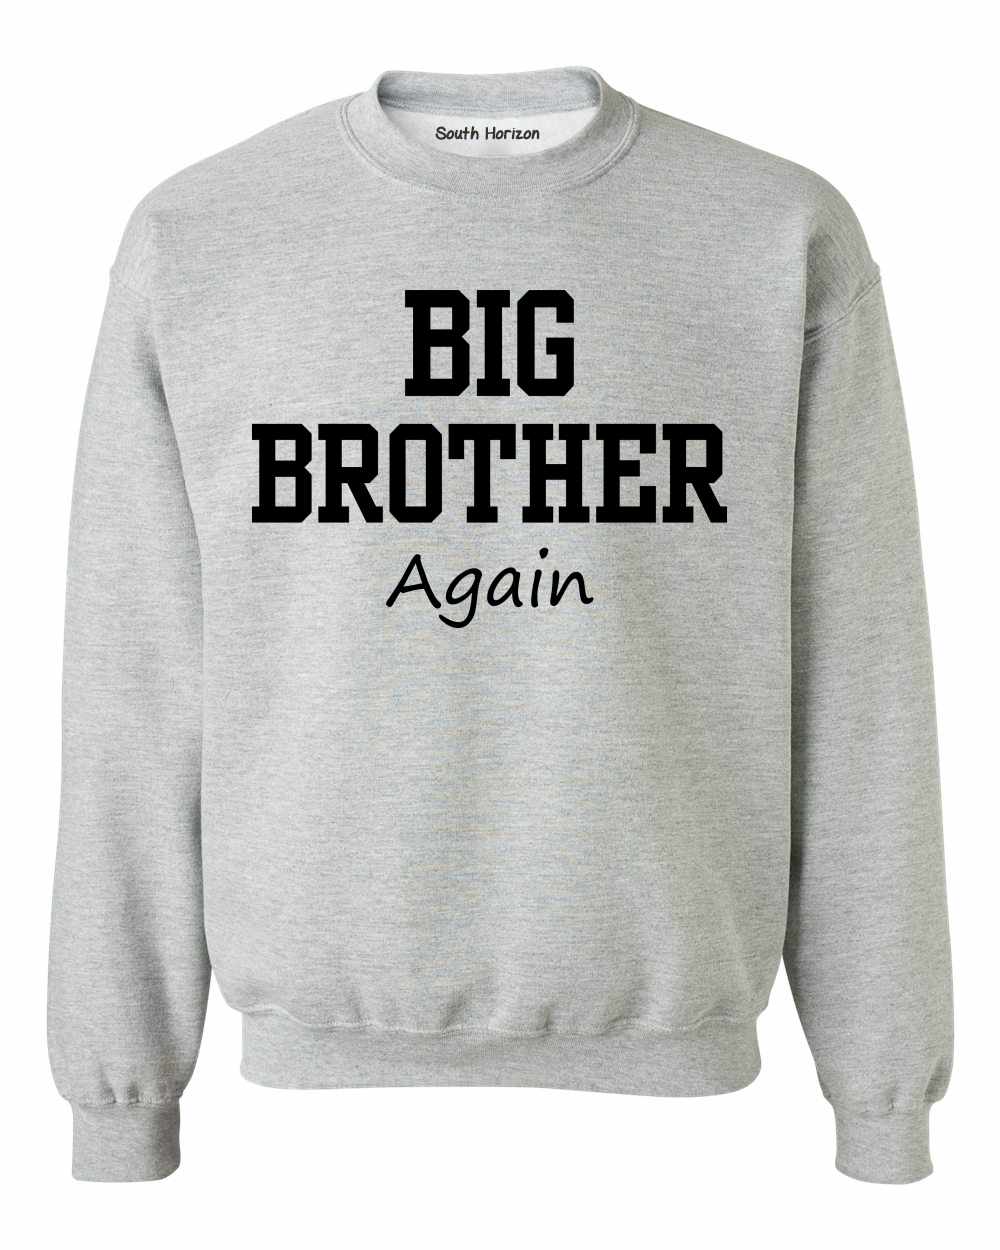 Big Brother Again on SweatShirt